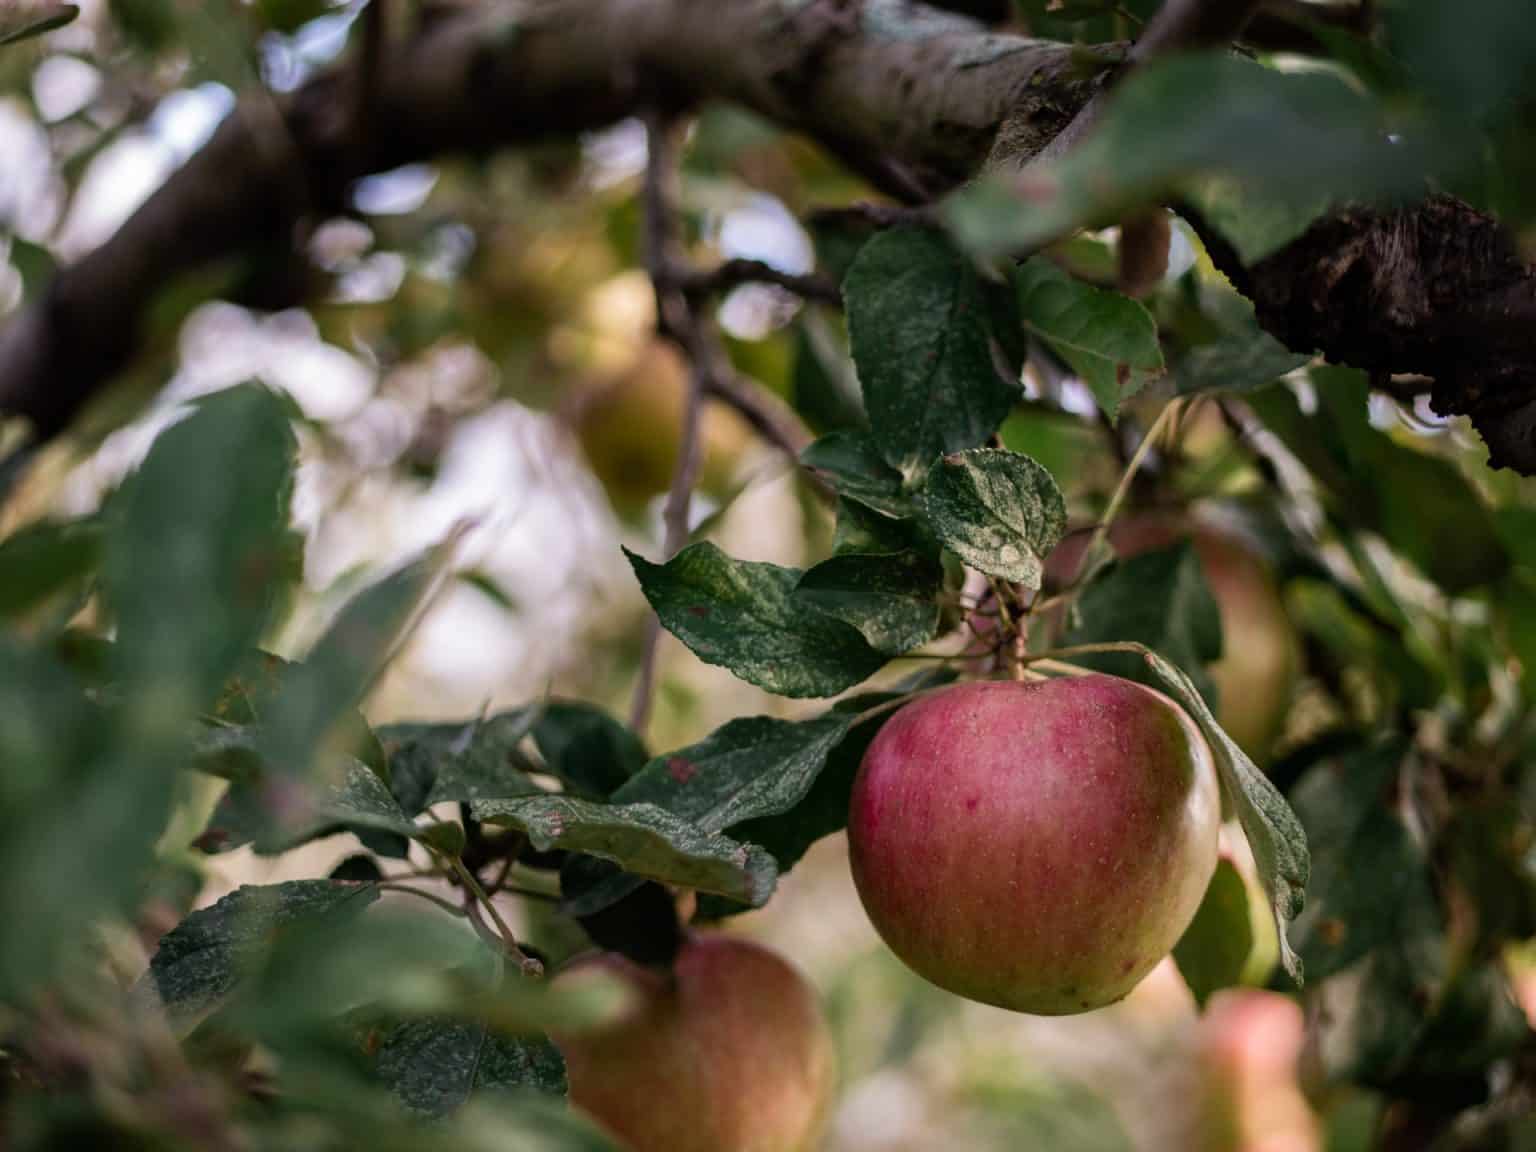 pommes verger naturel bio agriculture se regaler seine et marne vivre en grand 77 aaron burden J4dgSuiZaik unsplash 1536x1152 1